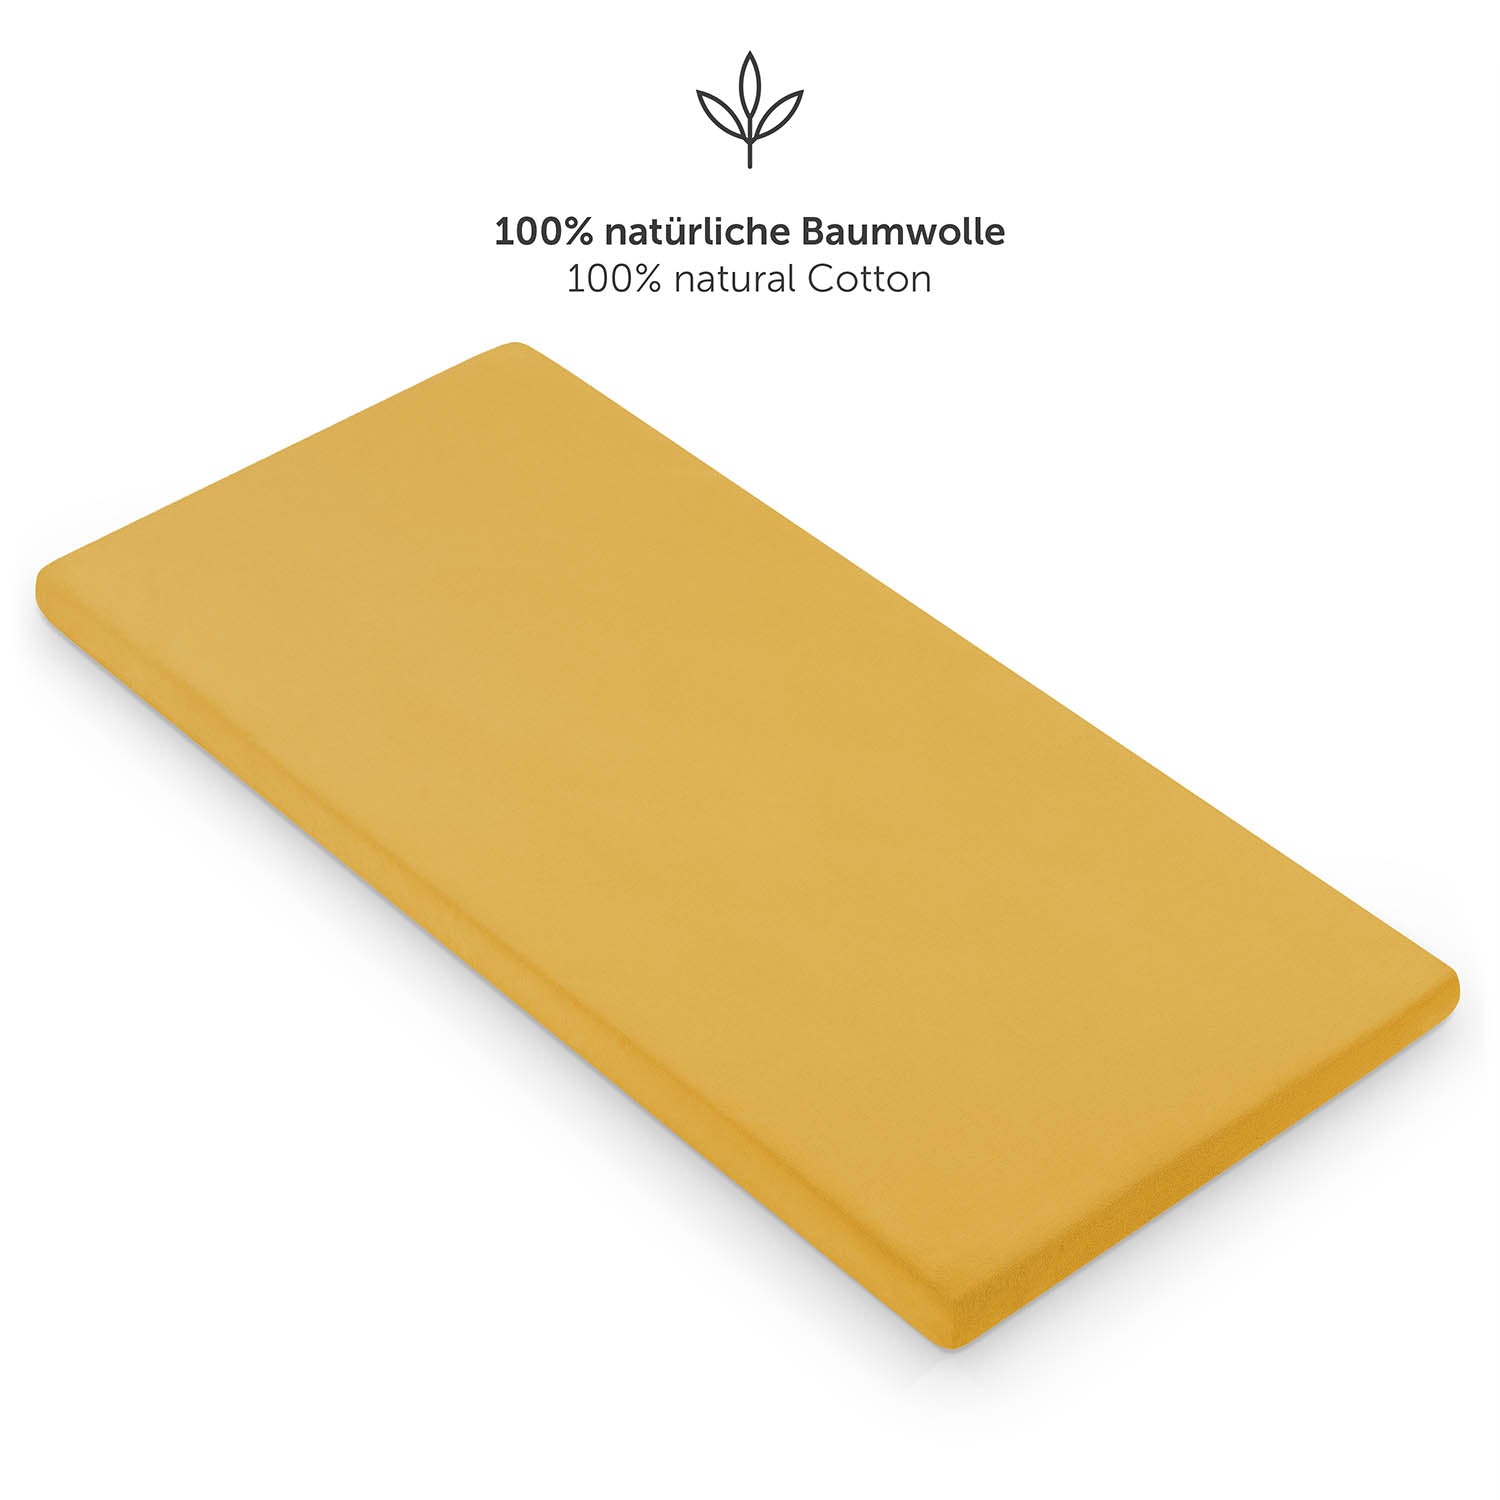 gelben Spannbettlaken aus 100% natürlicher Baumwolle für ein Kinderbett.